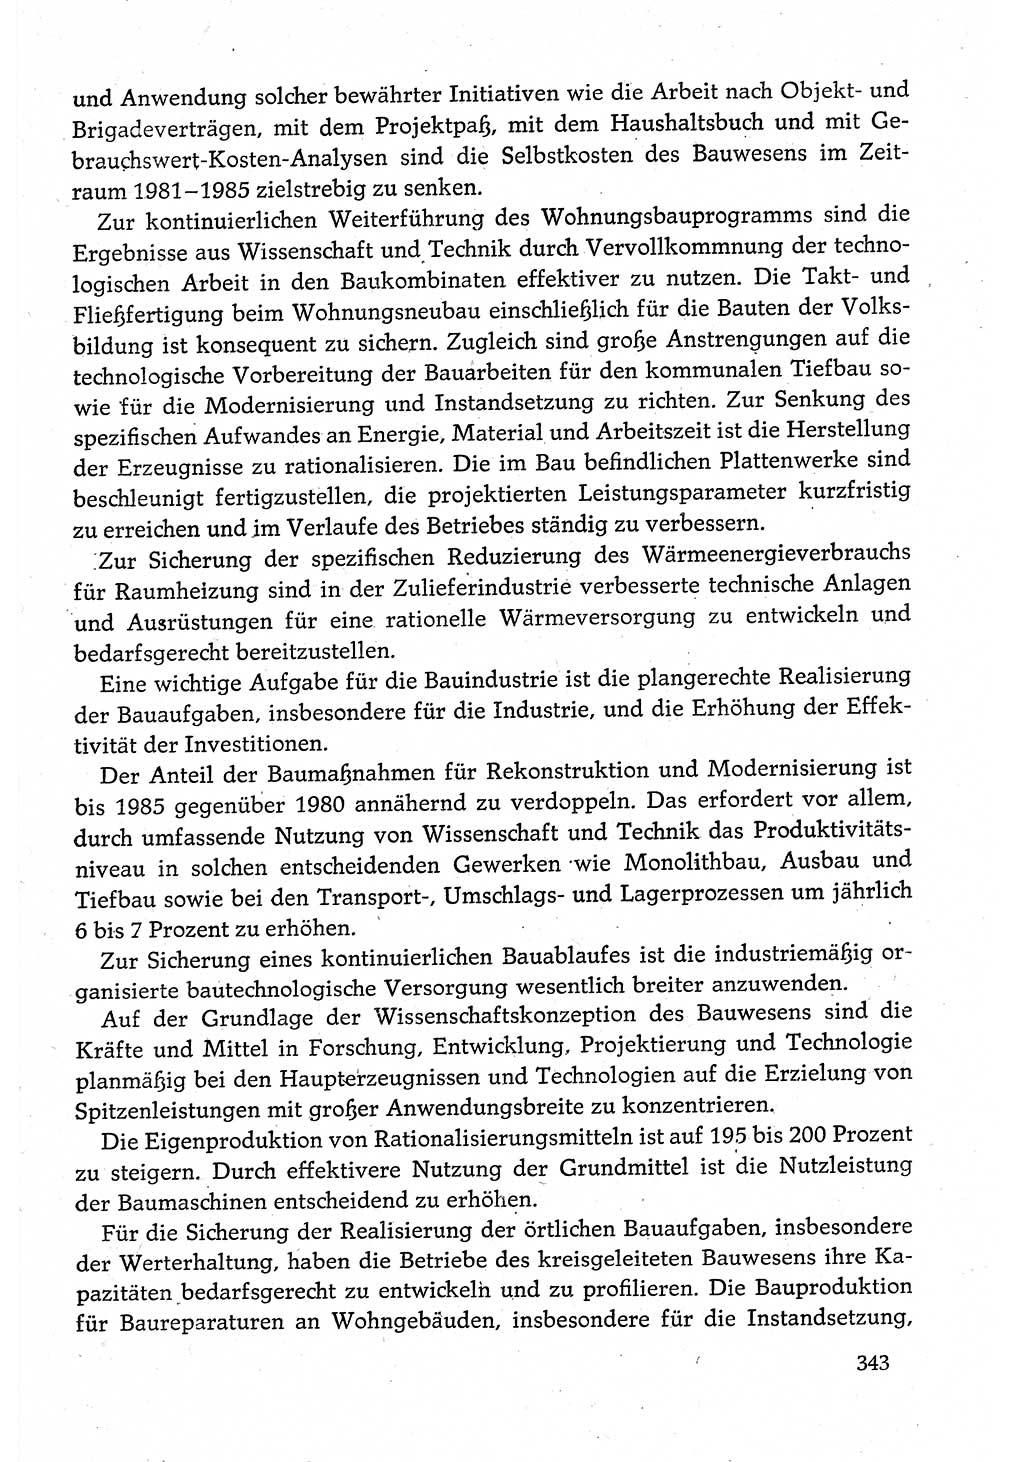 Dokumente der Sozialistischen Einheitspartei Deutschlands (SED) [Deutsche Demokratische Republik (DDR)] 1980-1981, Seite 343 (Dok. SED DDR 1980-1981, S. 343)